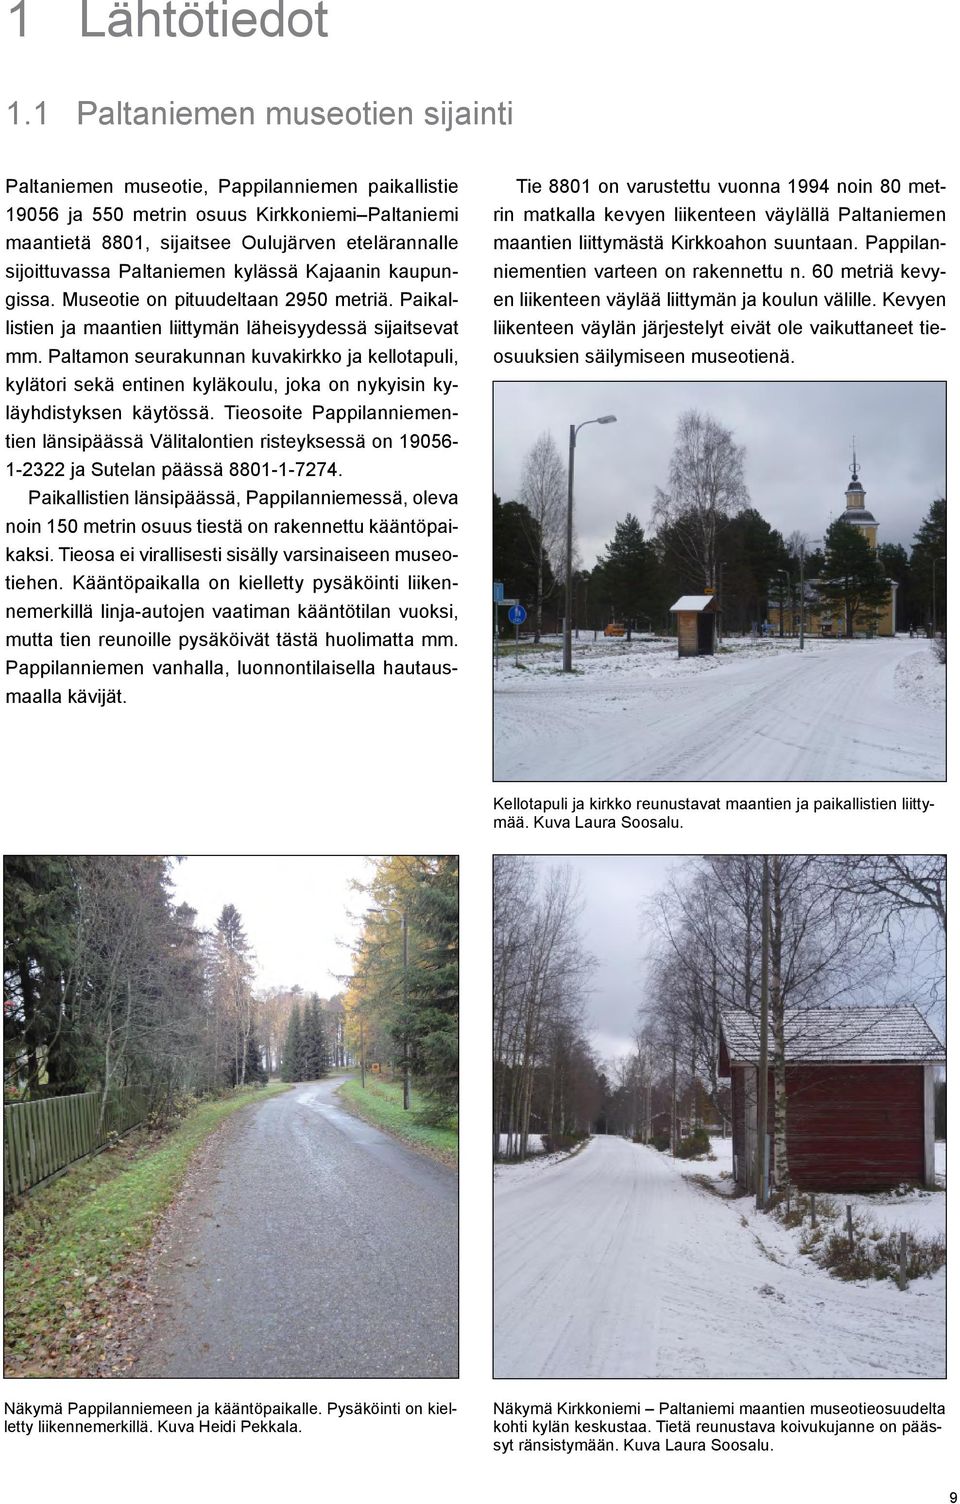 Paltaniemen kylässä Kajaanin kaupungissa. Museotie on pituudeltaan 2950 metriä. Paikallistien ja maantien liittymän läheisyydessä sijaitsevat mm.